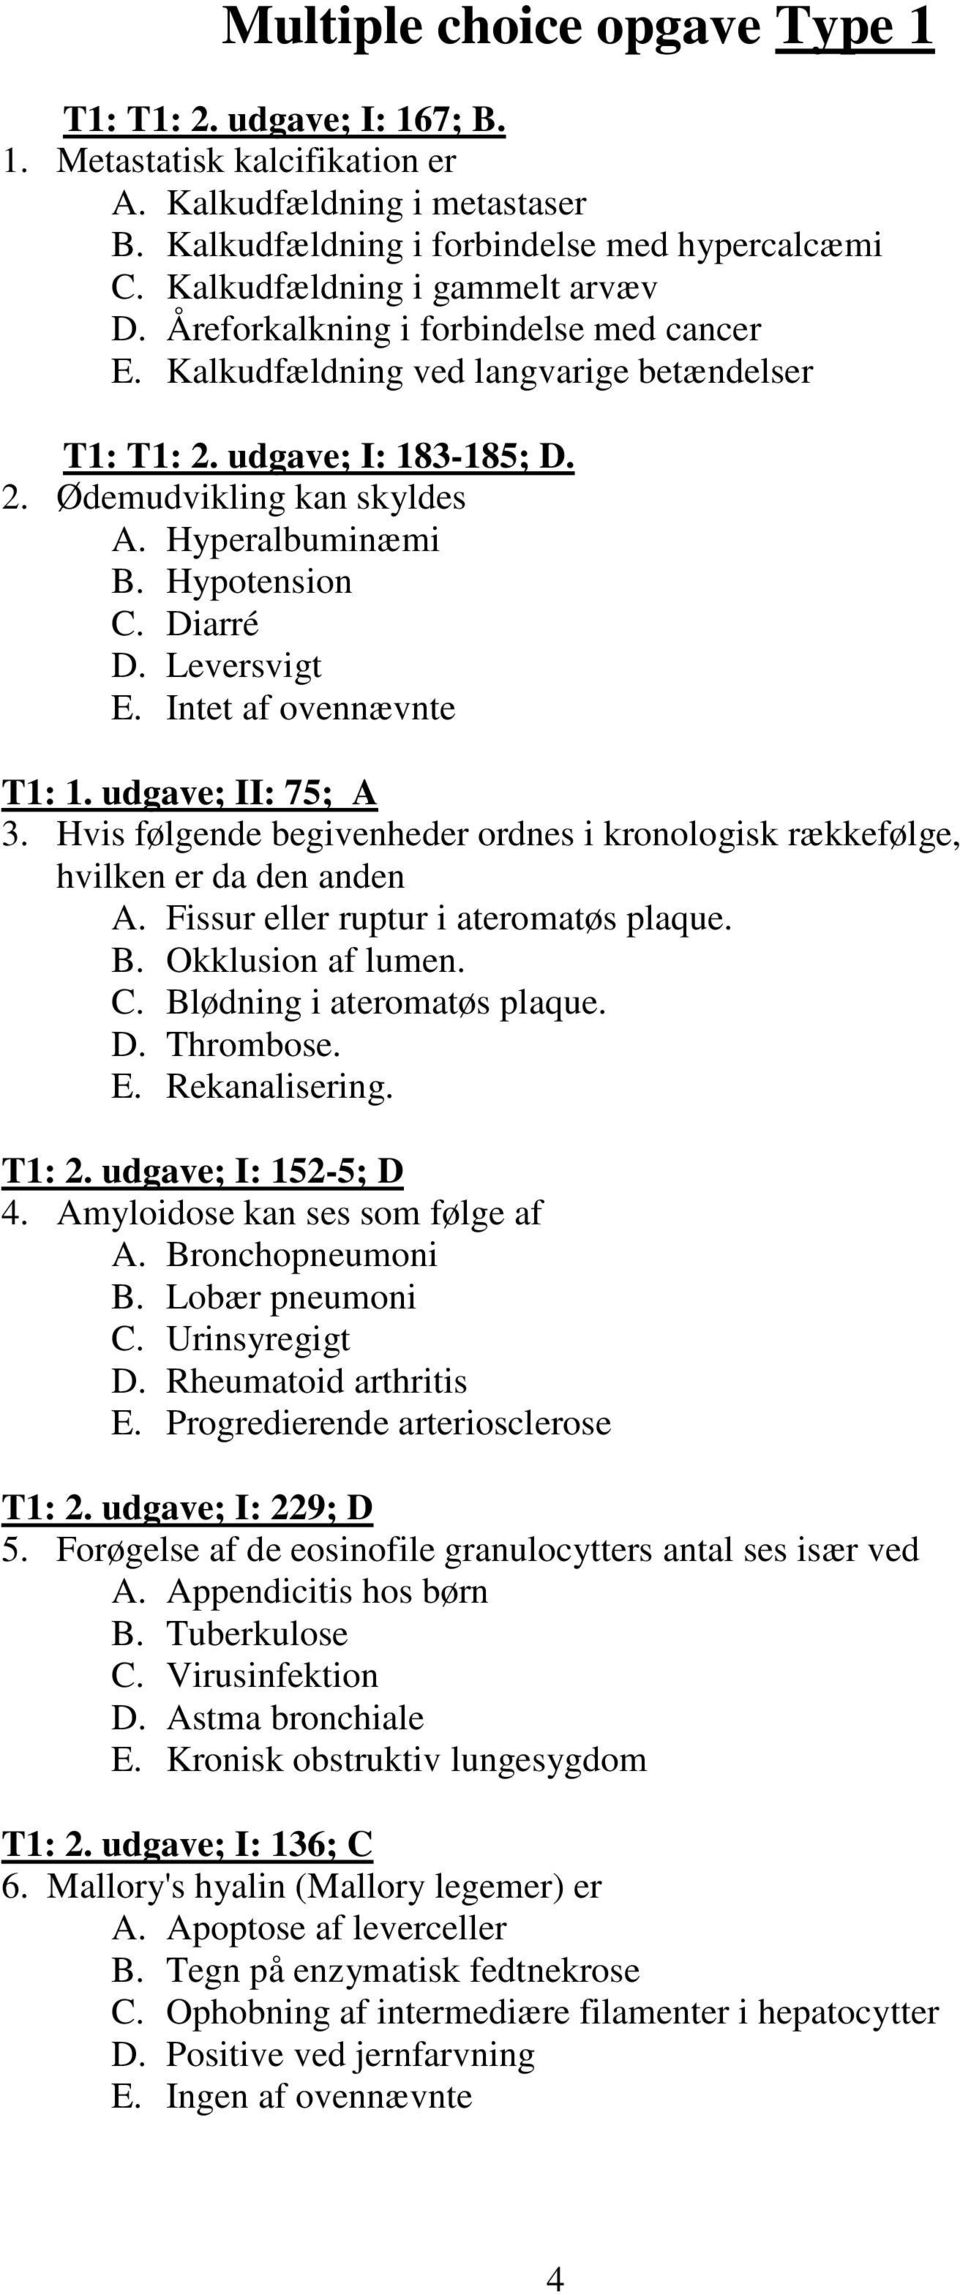 Hyperalbuminæmi B. Hypotension C. Diarré D. Leversvigt E. Intet af ovennævnte T1: 1. udgave; II: 75; A 3. Hvis følgende begivenheder ordnes i kronologisk rækkefølge, hvilken er da den anden A.